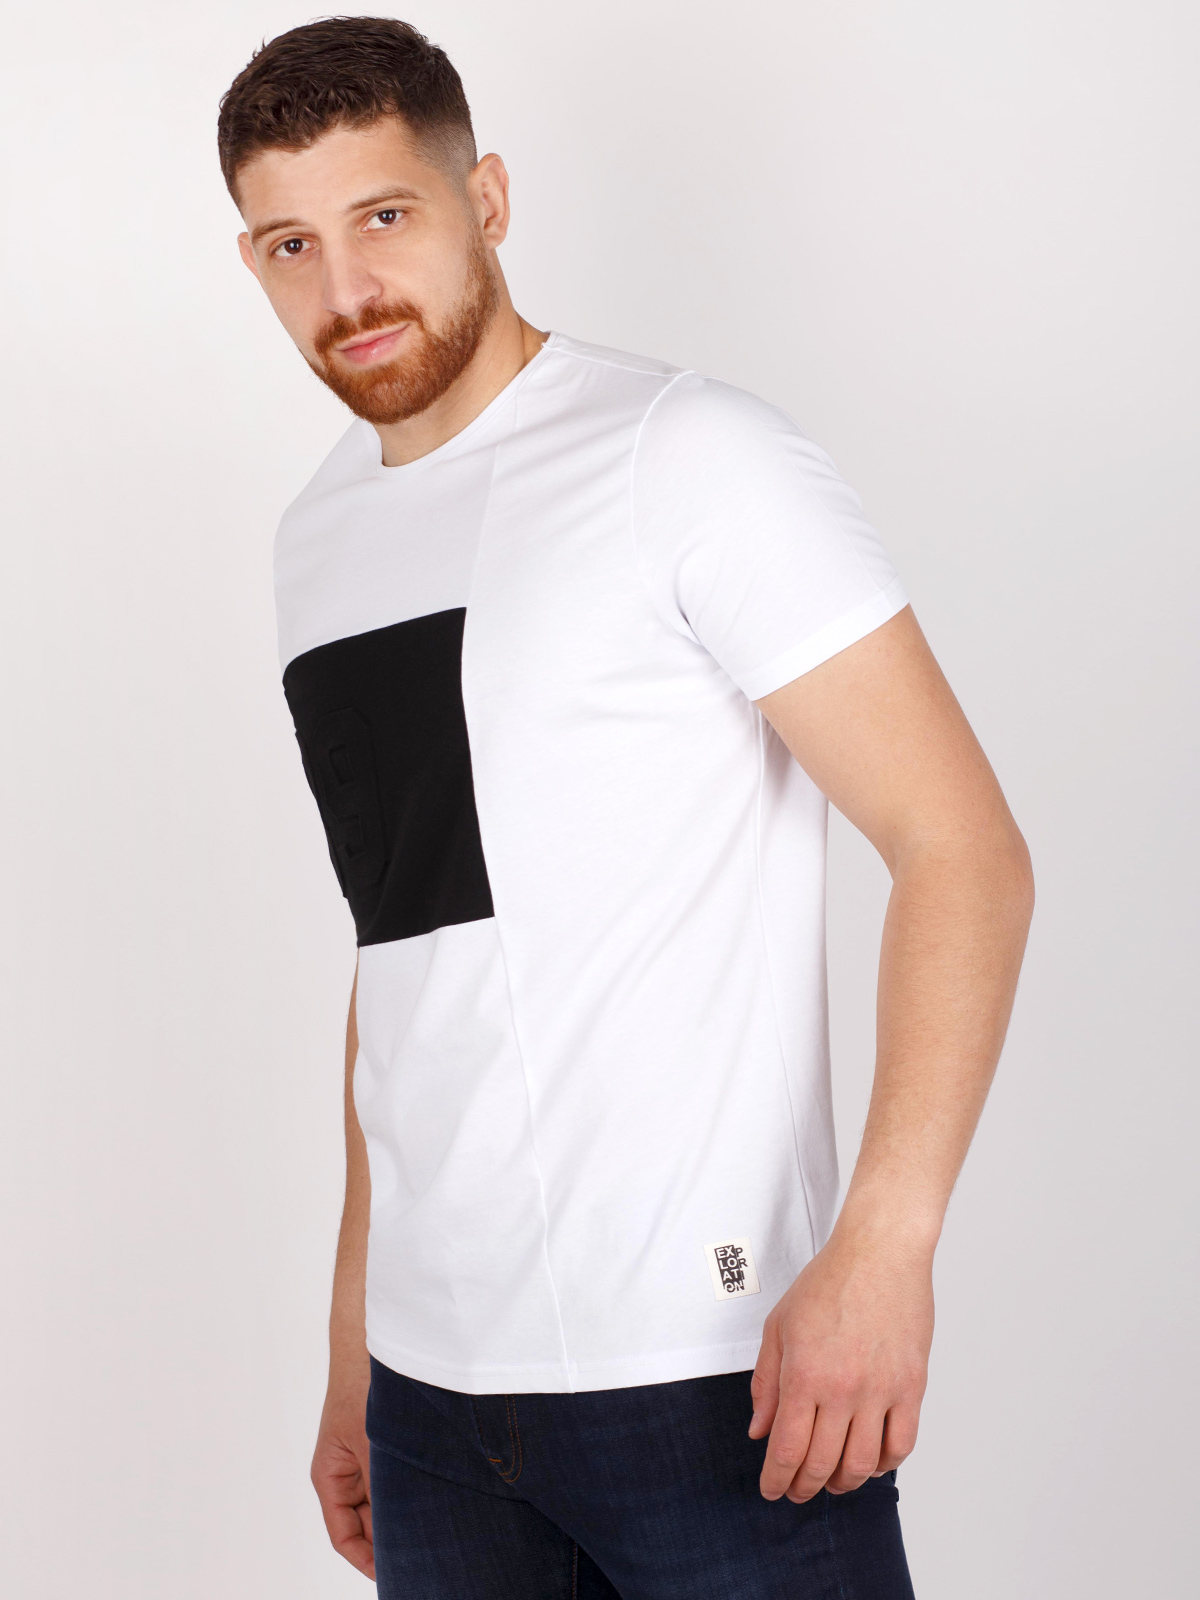 White tshirt with black print - 96413 € 16.31 img2